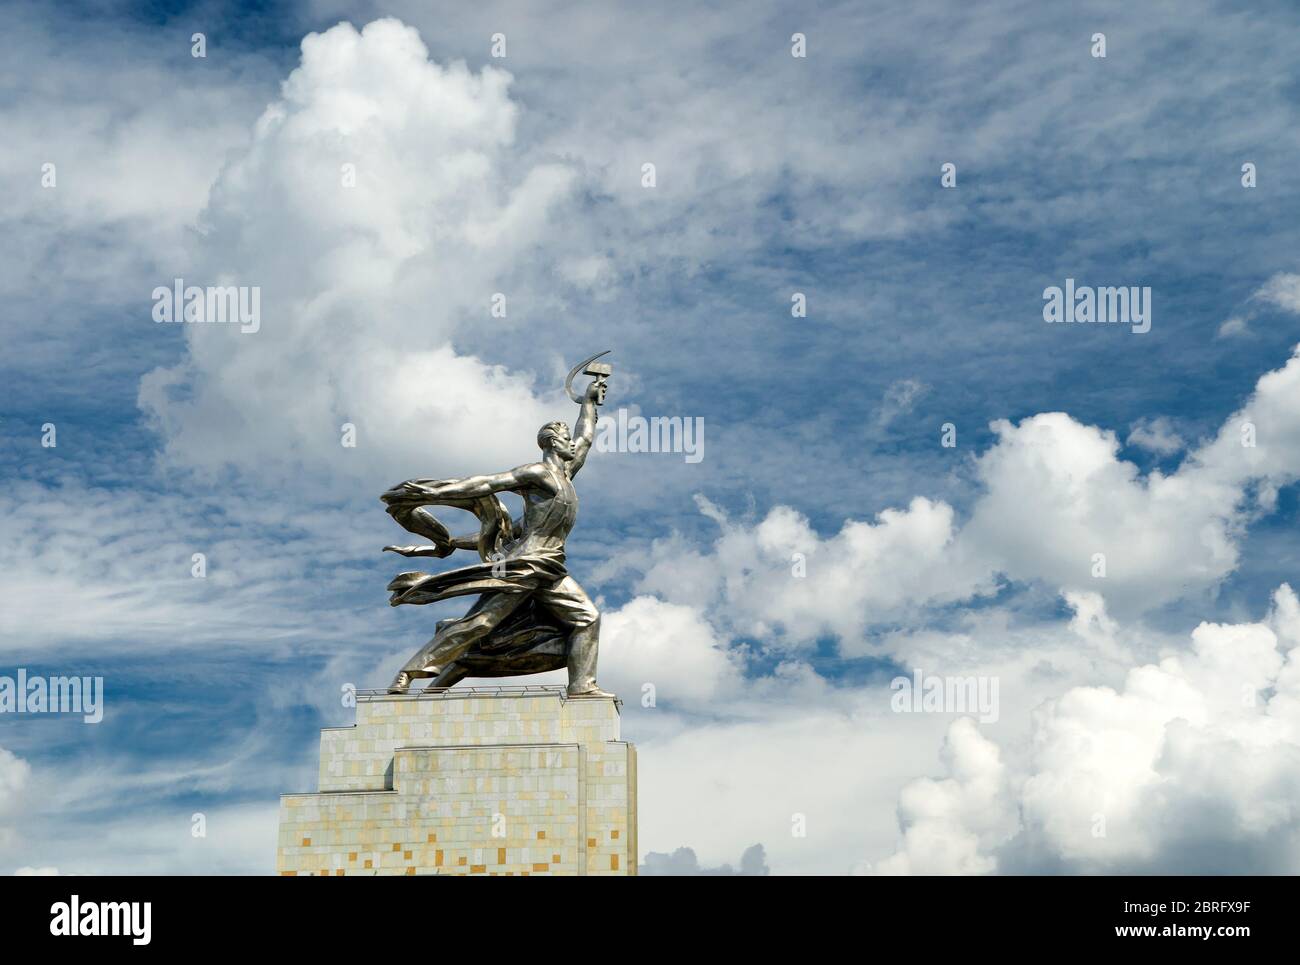 Berühmte sowjetische Denkmal Arbeiter und Kolchose Frau (Arbeiter und Kollektiv Bauer) der Bildhauerin Vera Mukhina in Moskau, Russland. Das Denkmal ist aus sta Stockfoto